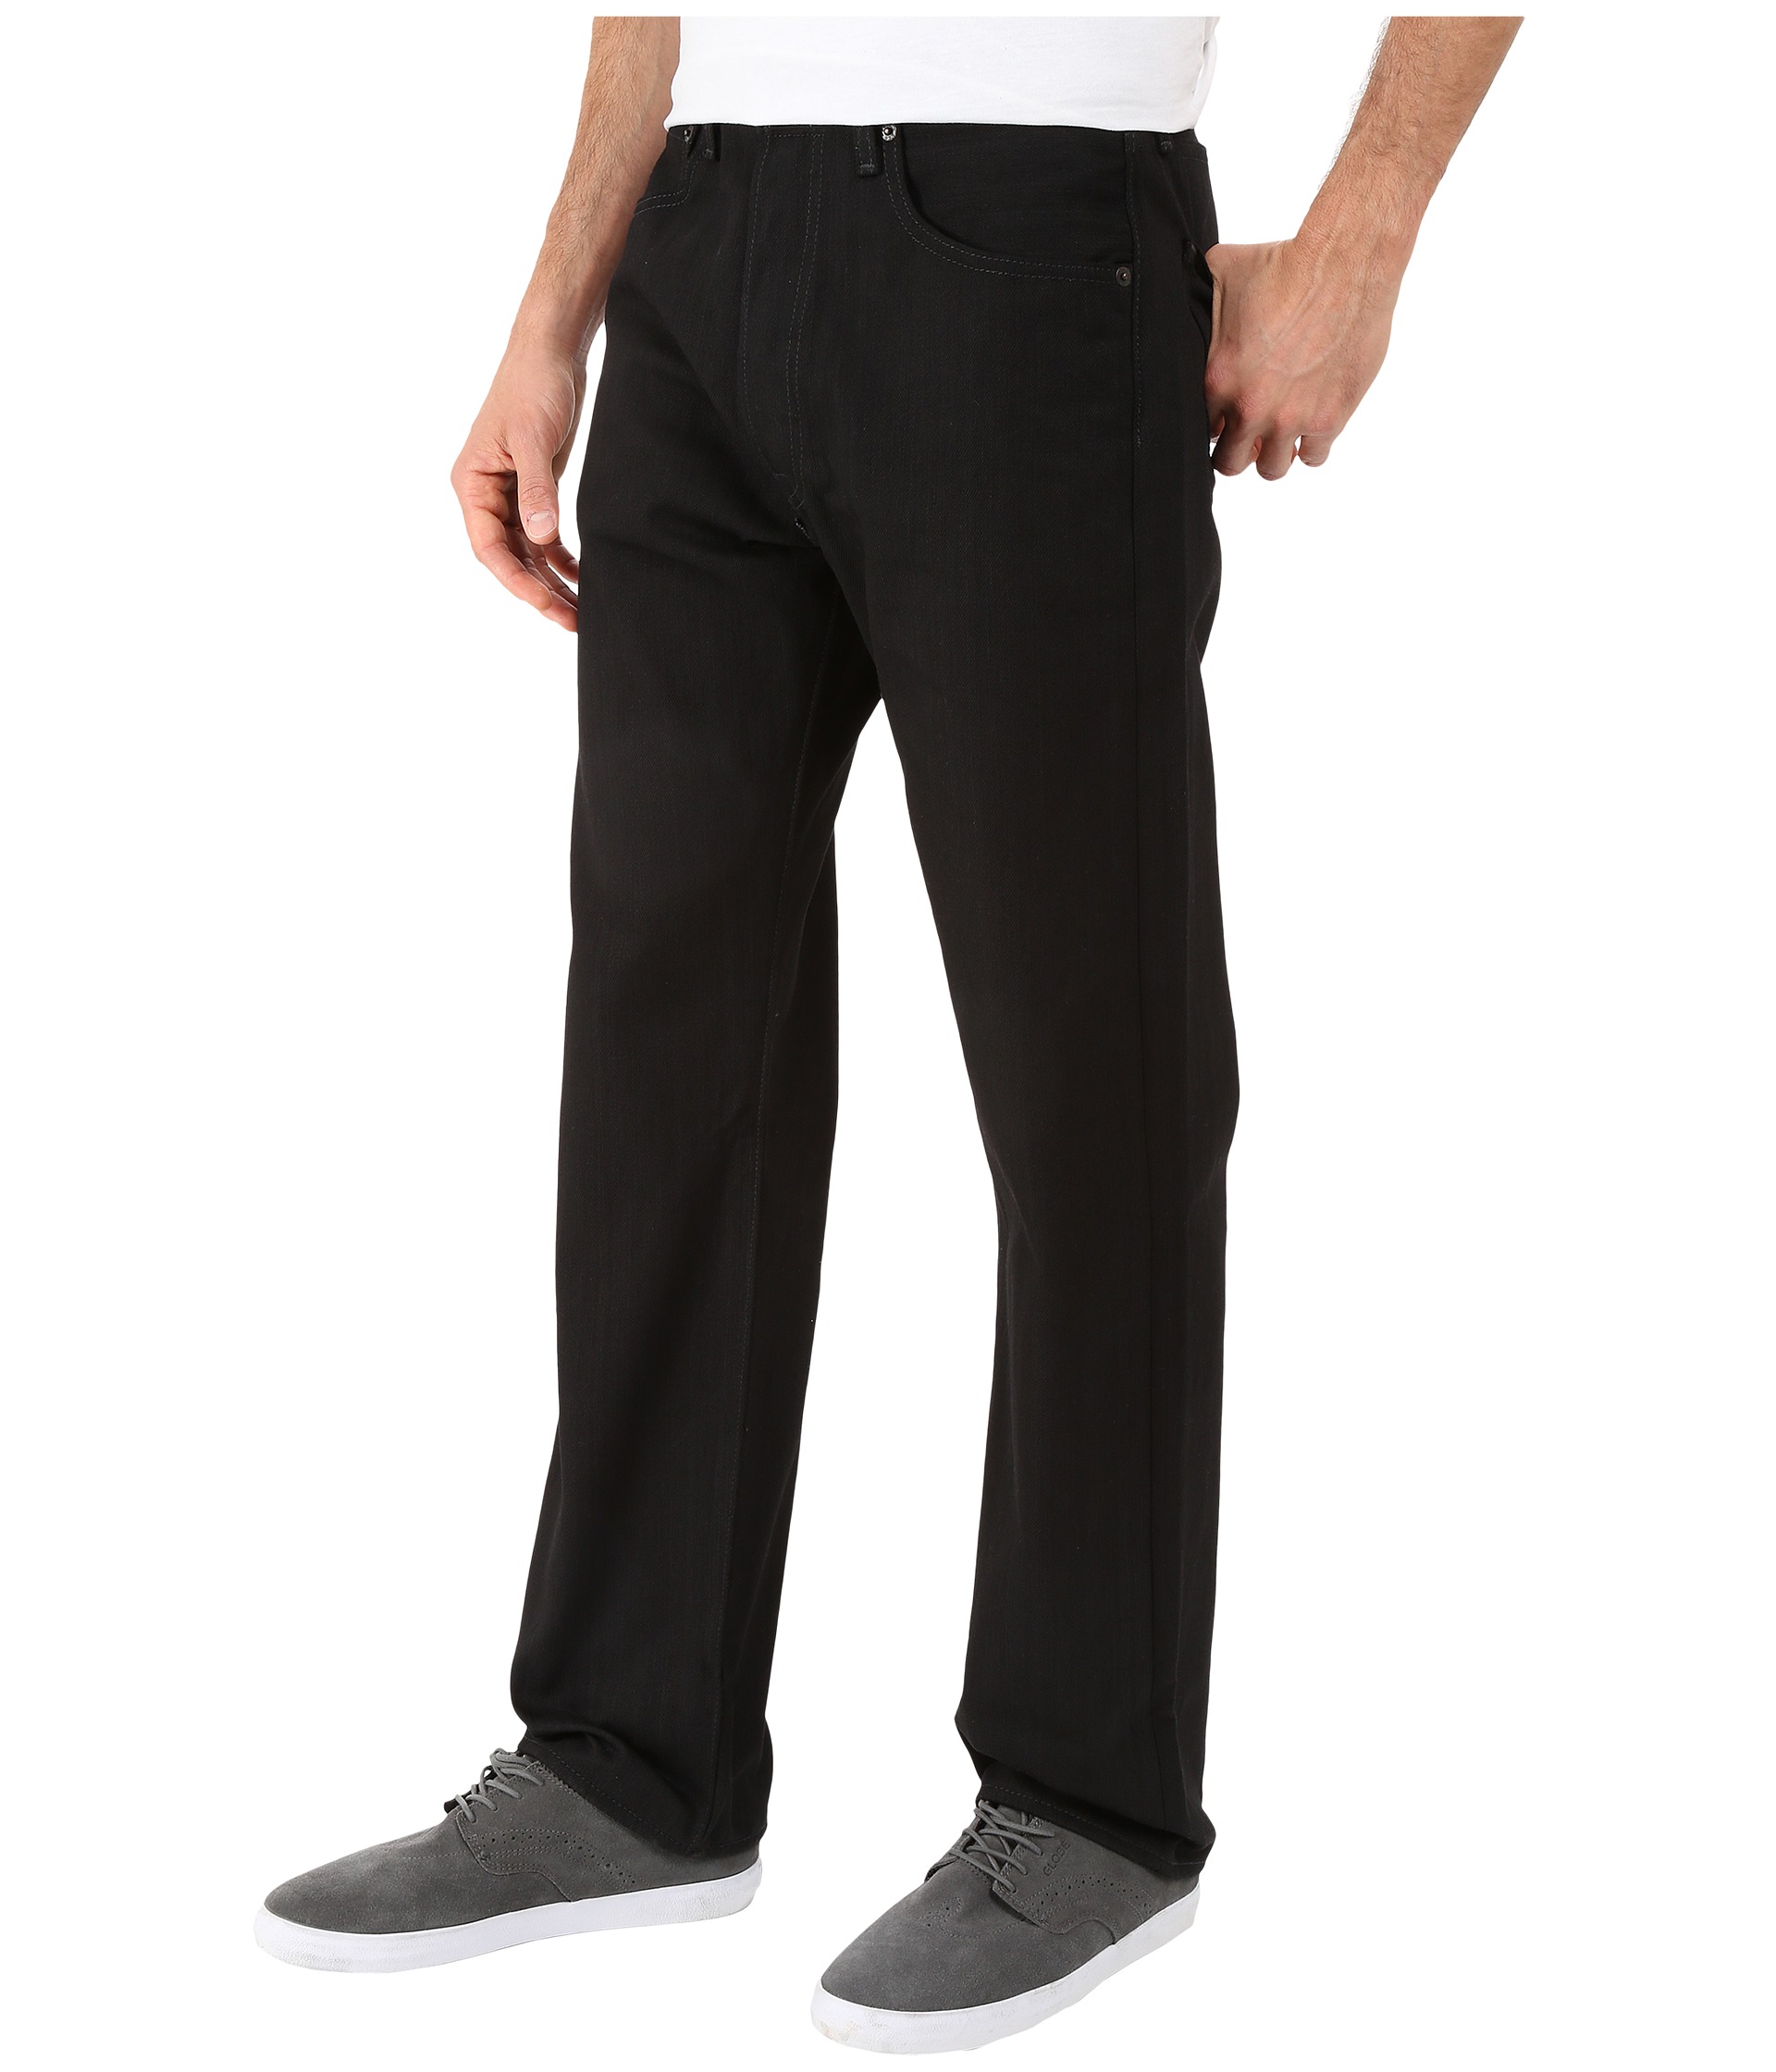 Levis® Mens 501® Original Shrink to Fit Jeans Black/Black/Black Fill